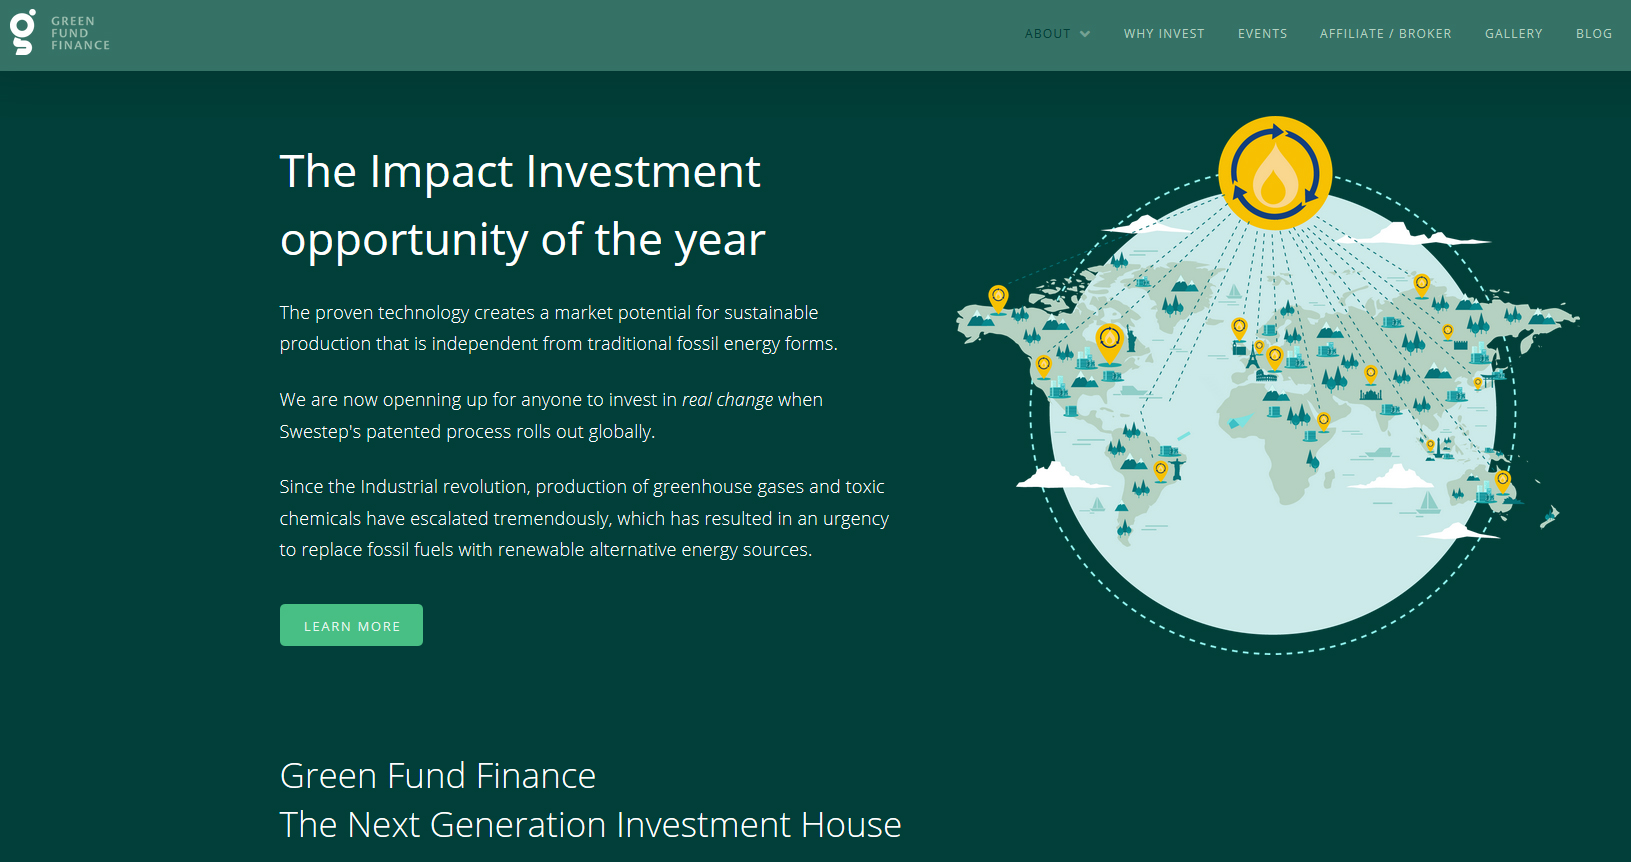 greenfund finance4.jpg